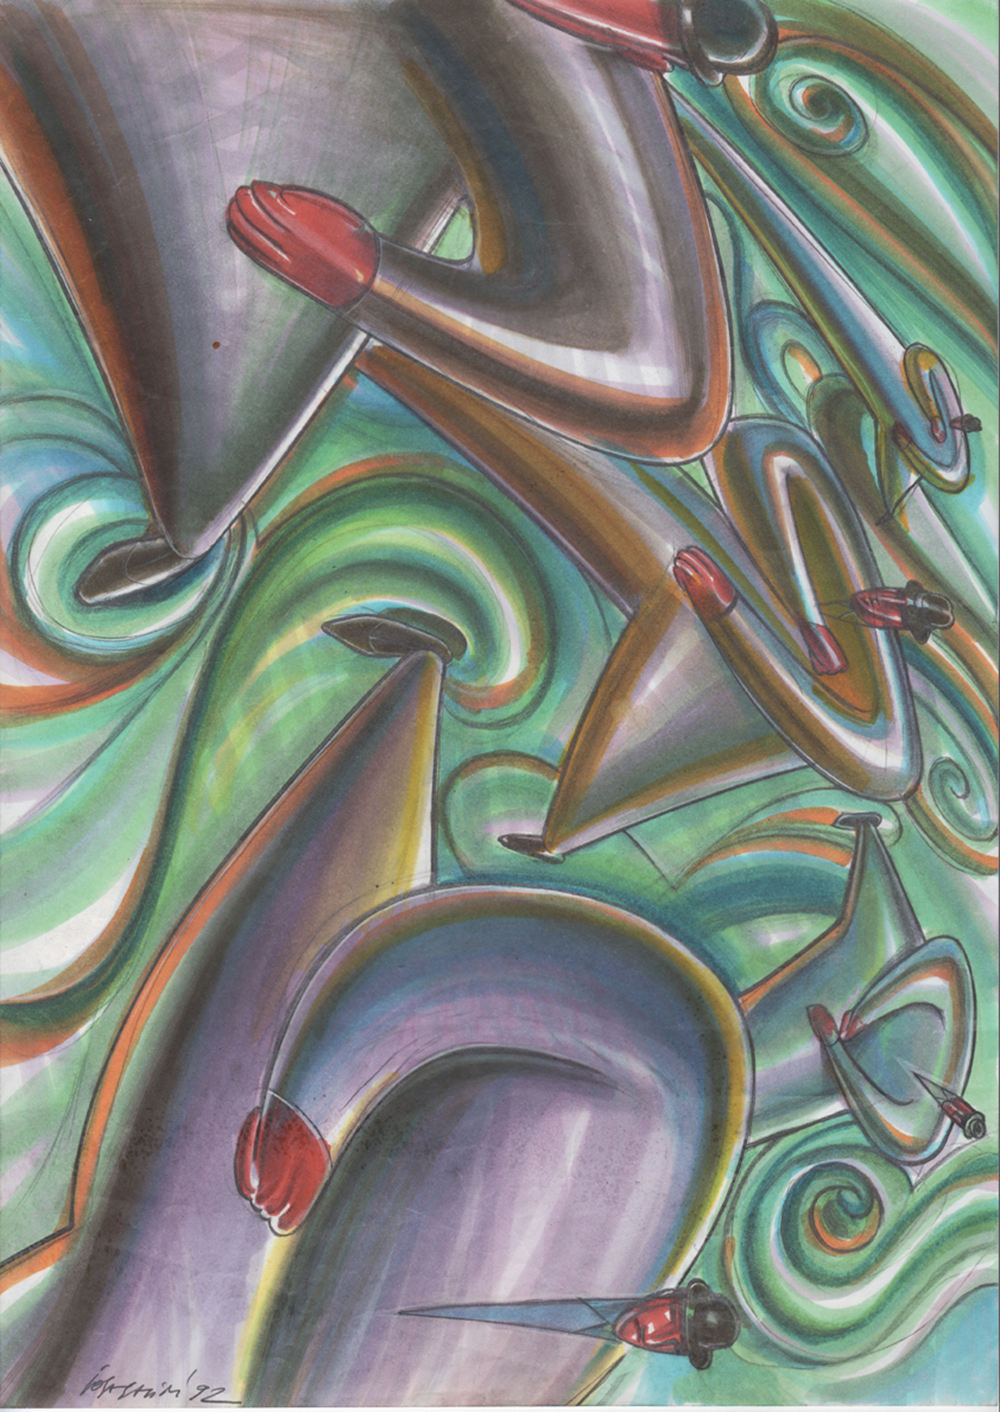 Illustrazione per collezione Tran Tran di BRF, 1992, tecnica mista su carta, cm 29.7x42